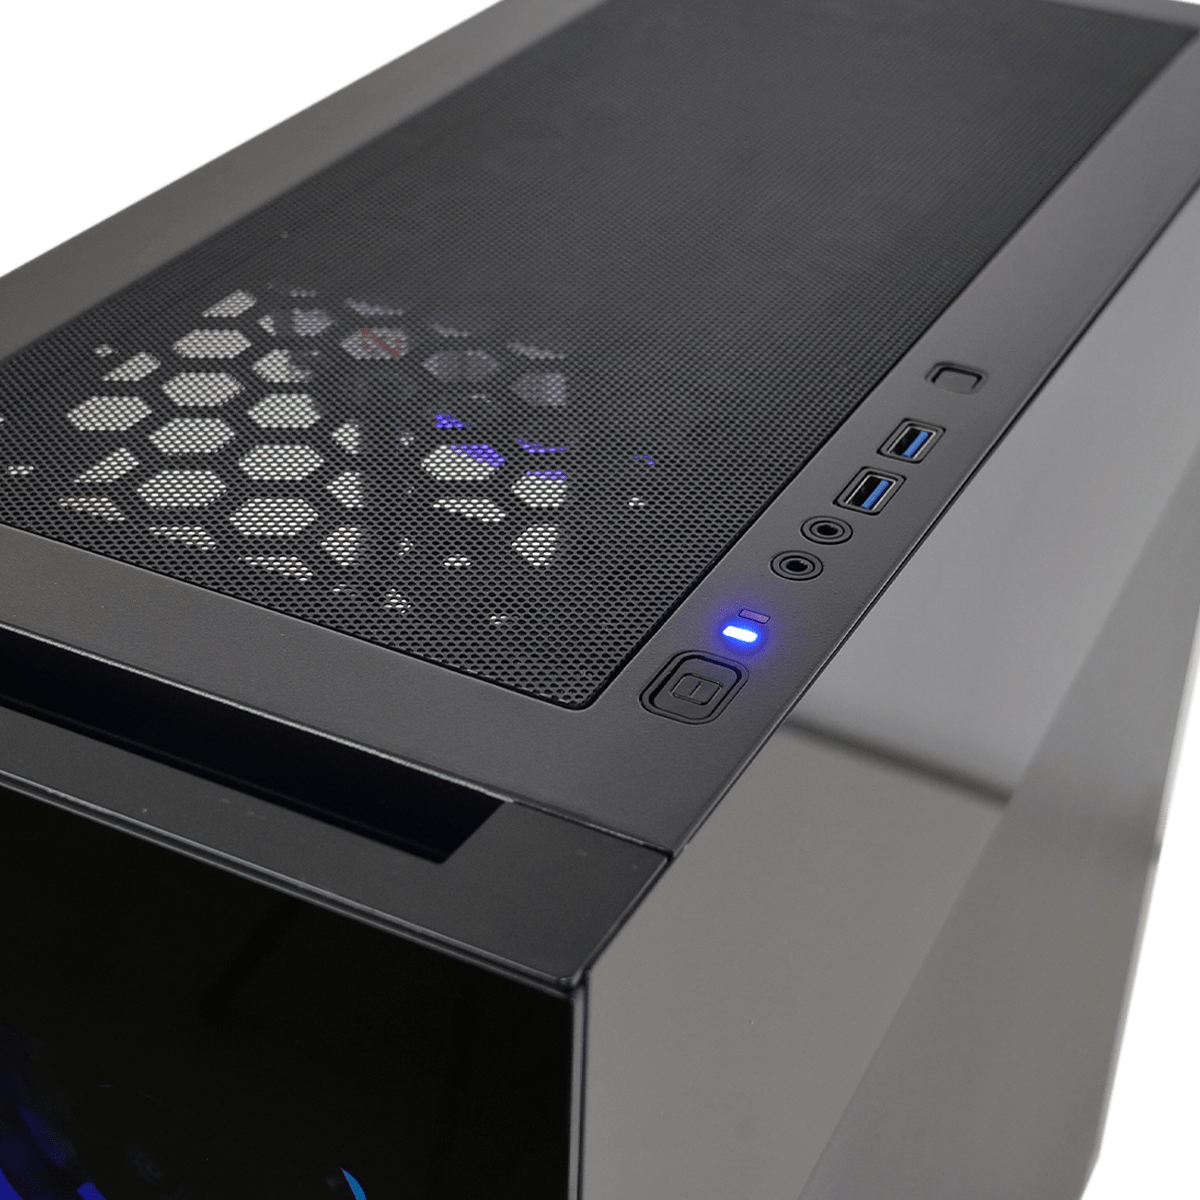 Un PC complet avec Radeon RX 7900 GRE disponible à 999 € sur un site  (presque) FR - Hardware & Co